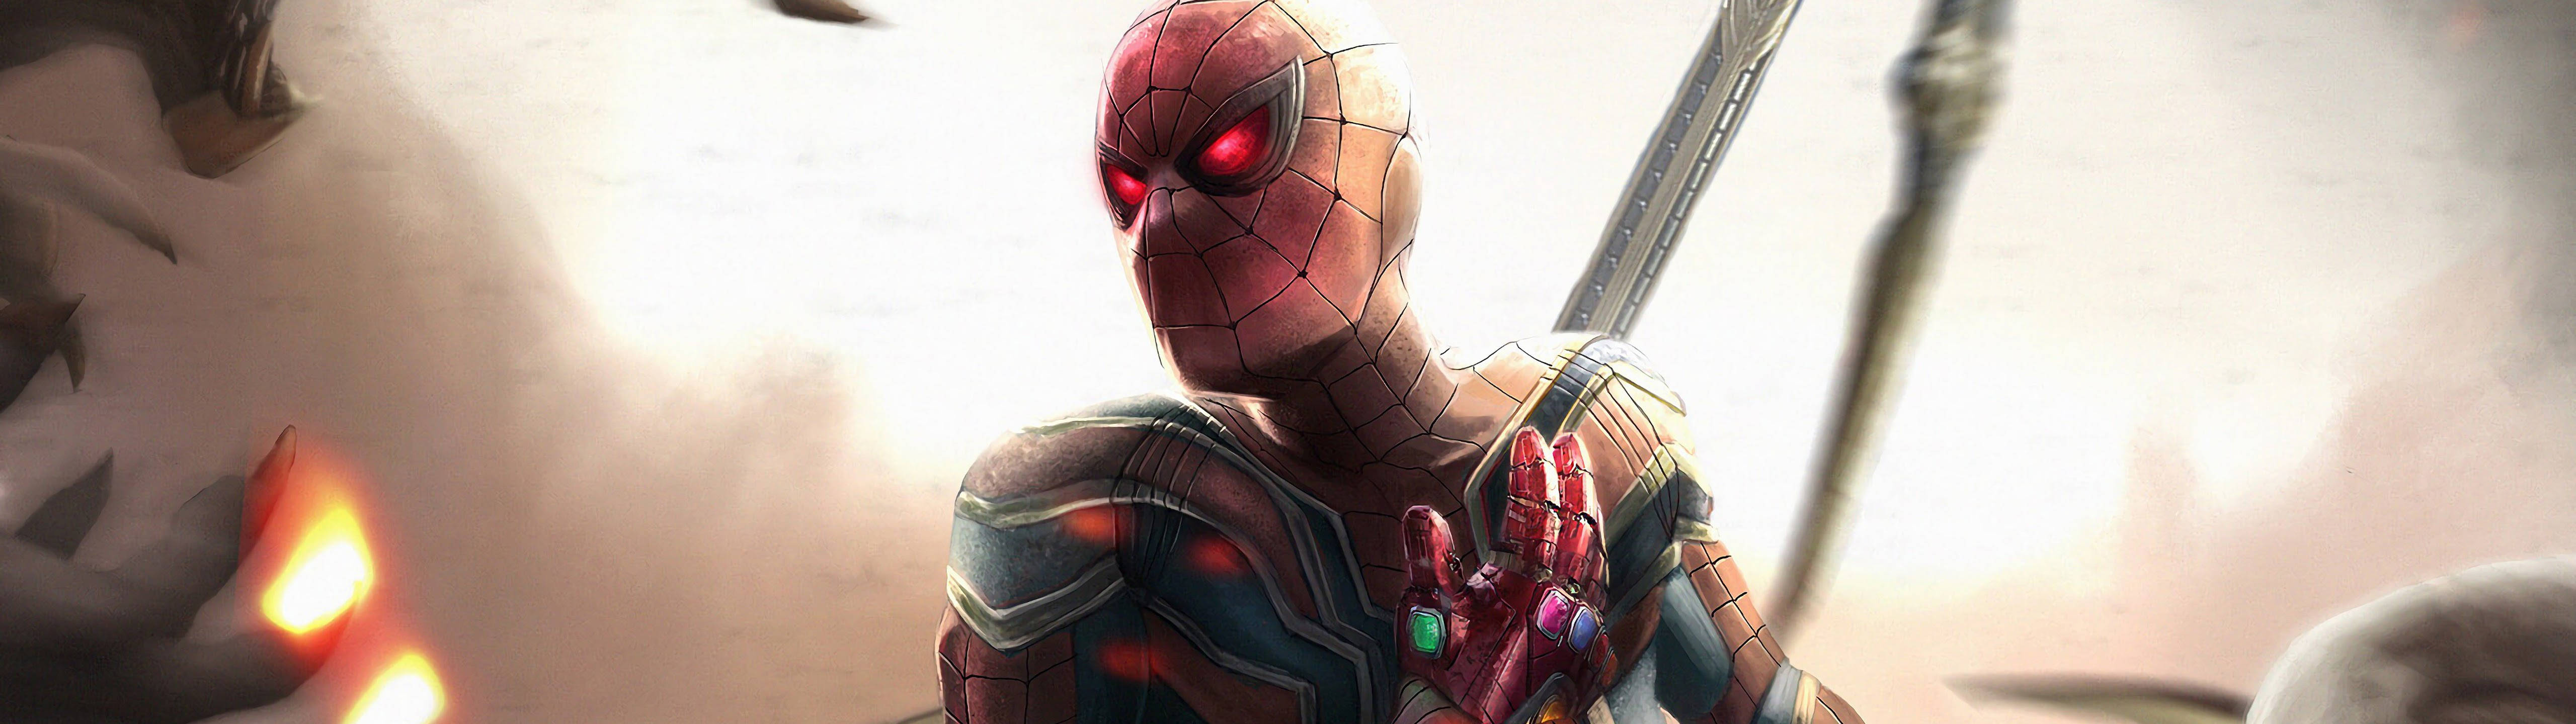 Marvel's Spiderman With Infinity Gauntlet 5120 X 1440 Wallpaper